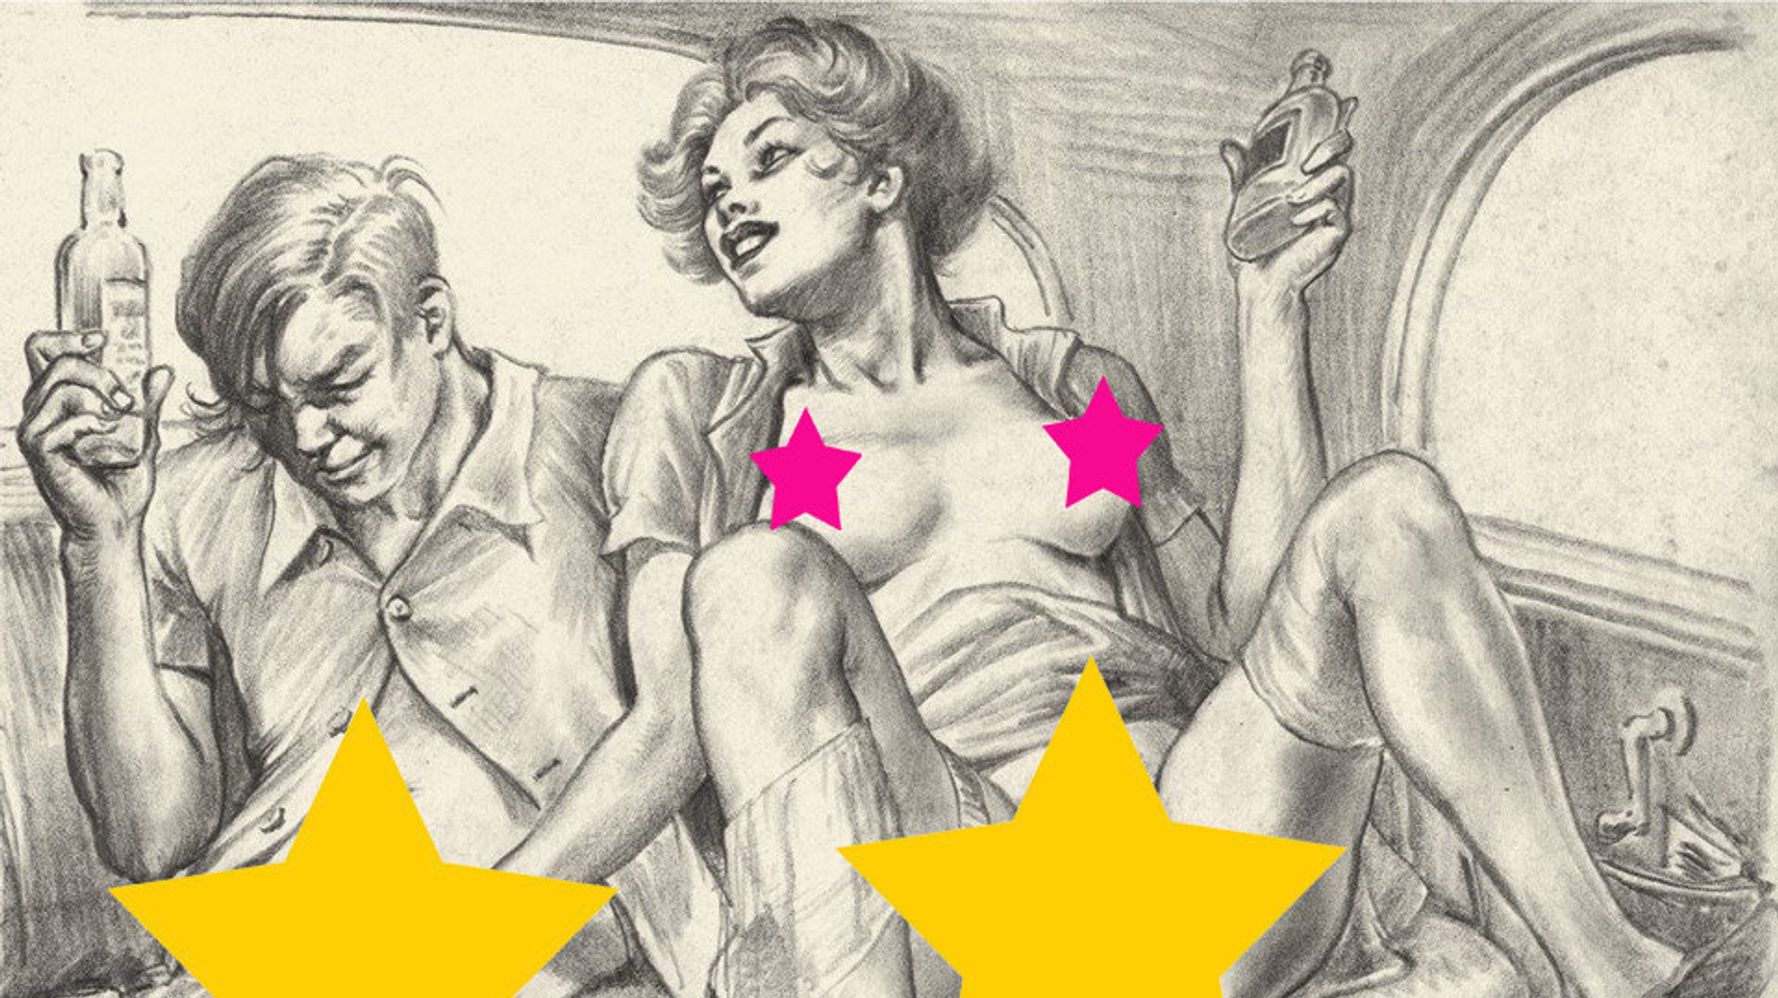 1940s Orgies - The Strange Case Of Thomas Poulton, An Erotic Artist In The 1940s (NSFW) |  HuffPost Entertainment